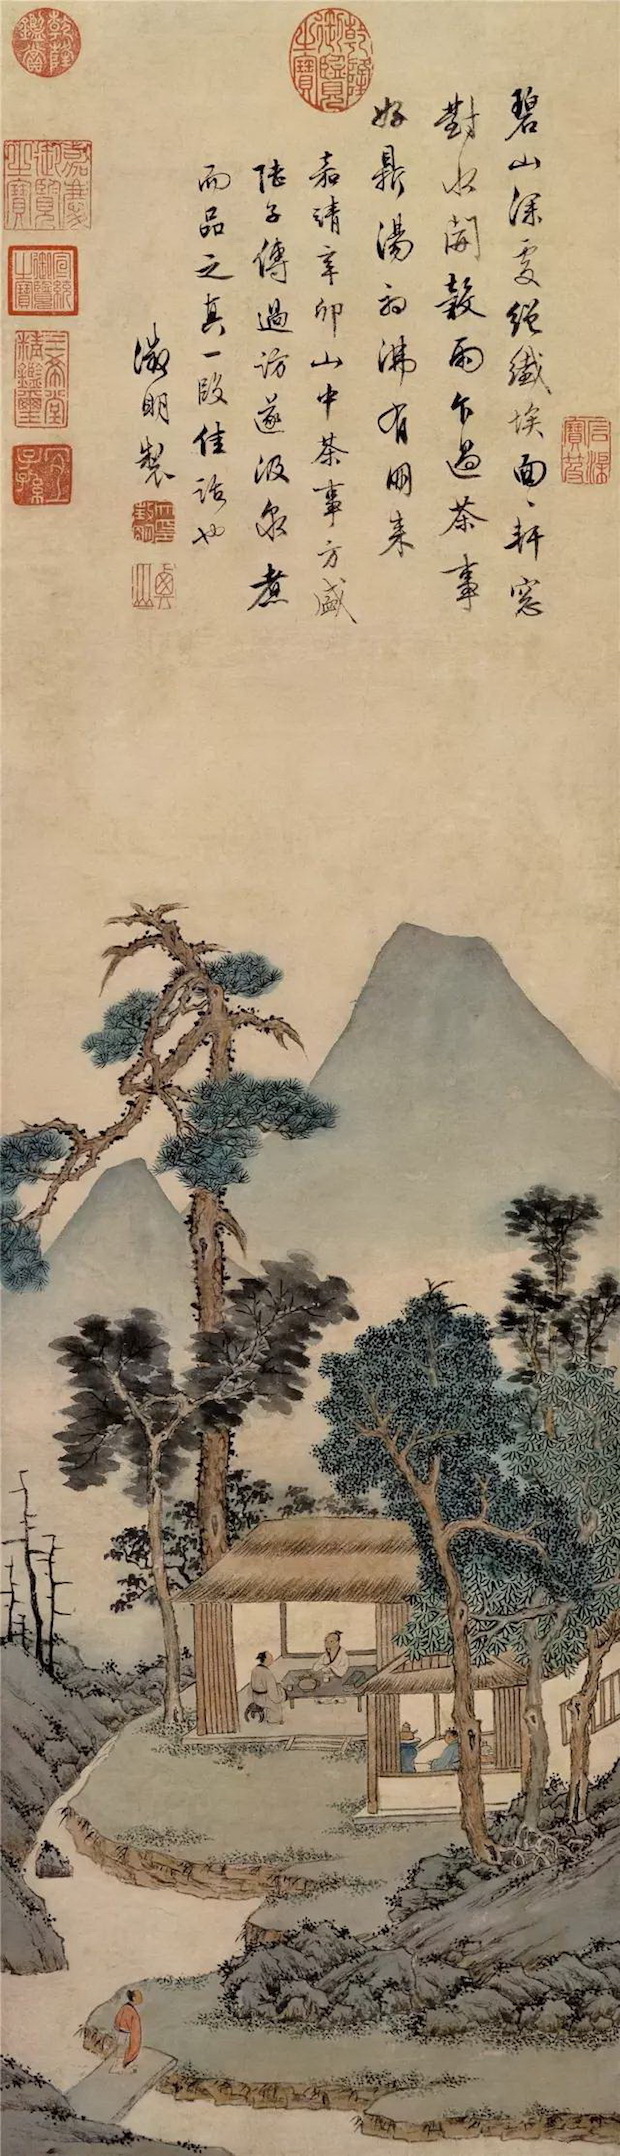 明 文徵明《谷雨品茶图》台北故宫博物院藏